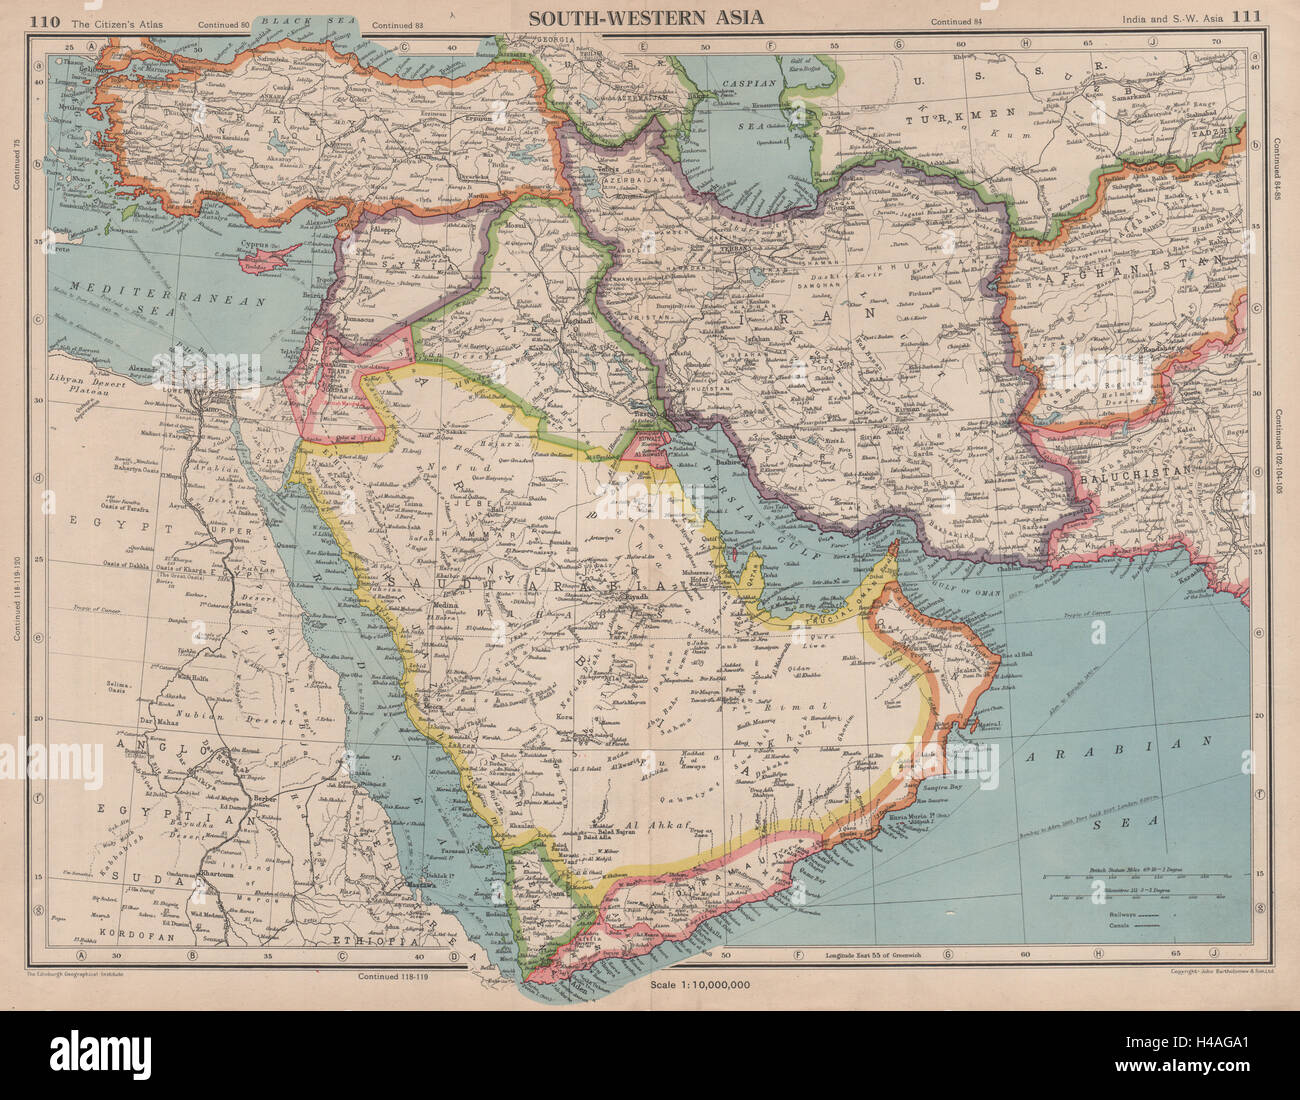 recoger vergüenza molestarse Oriente Medio. Asia sudoccidental tregua Dibai Omán (EAU), Abu Dhabi  (Dubai) mapa de 1944 Fotografía de stock - Alamy